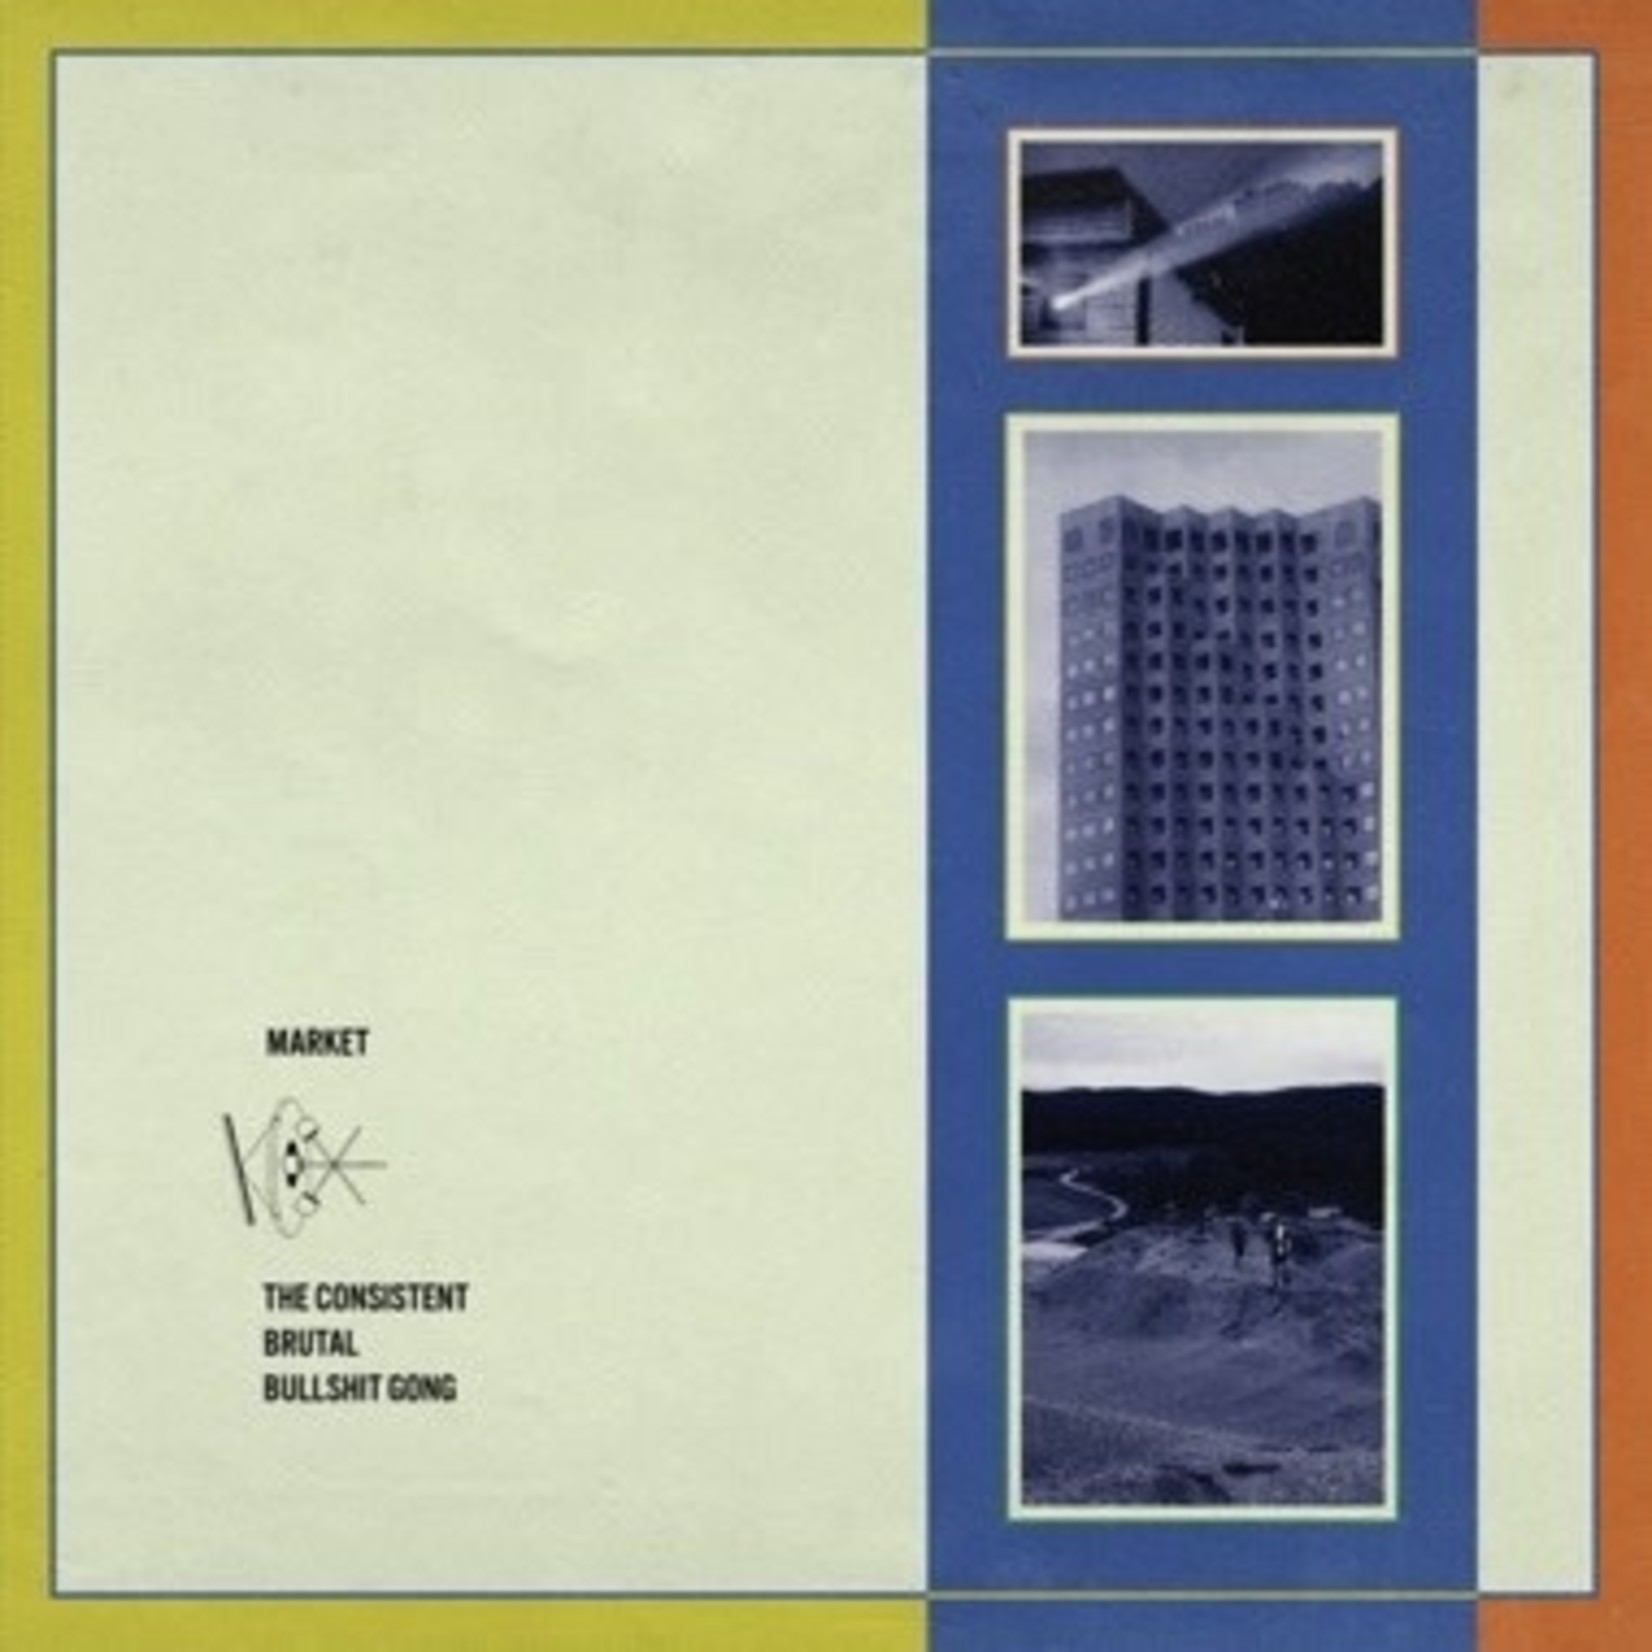 Western Vinyl Market - The Consistent Brutal Bullshit Gong (LP) [Blue]